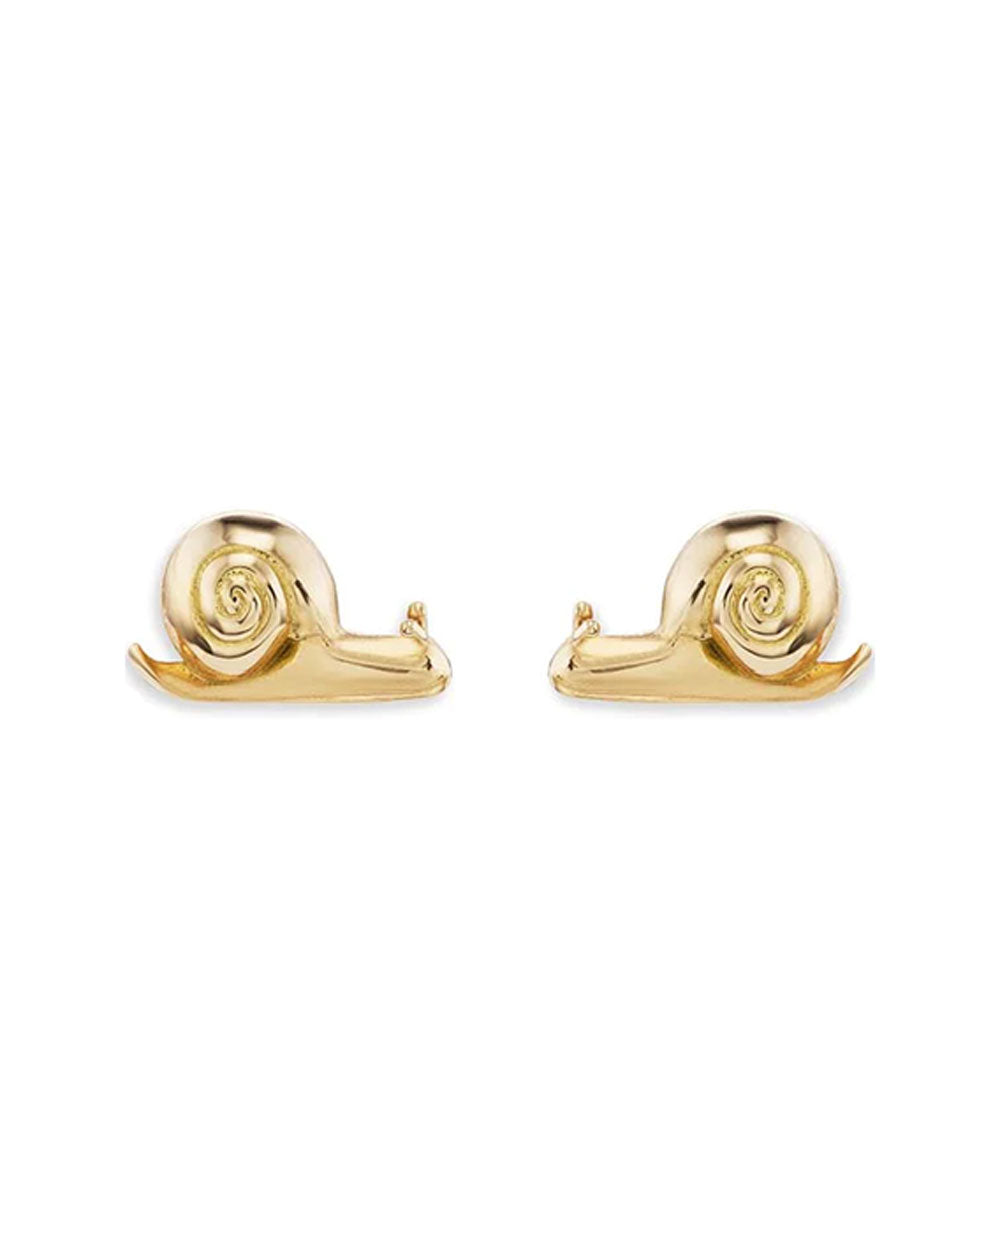 18k Yellow Gold Snail Stud Earrings